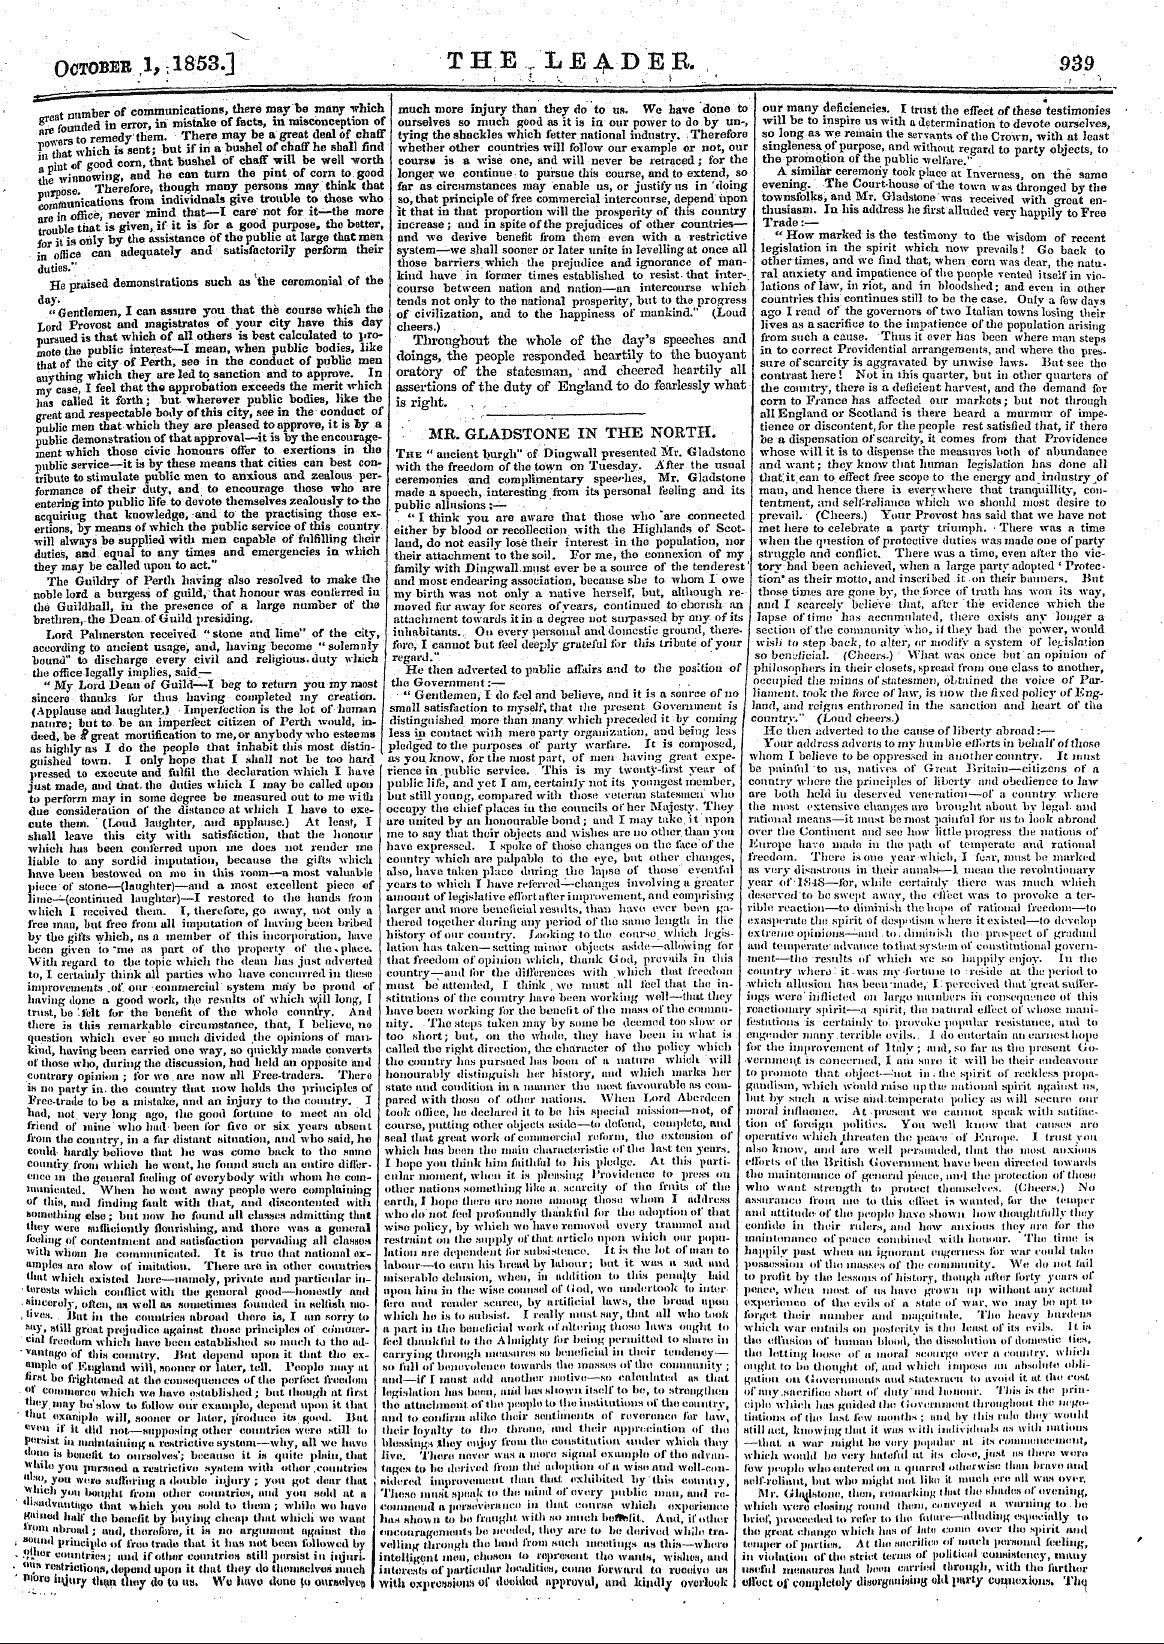 Leader (1850-1860): jS F Y, 2nd edition - October 1,1853.] The..Le4.Der. 939 - ' :...